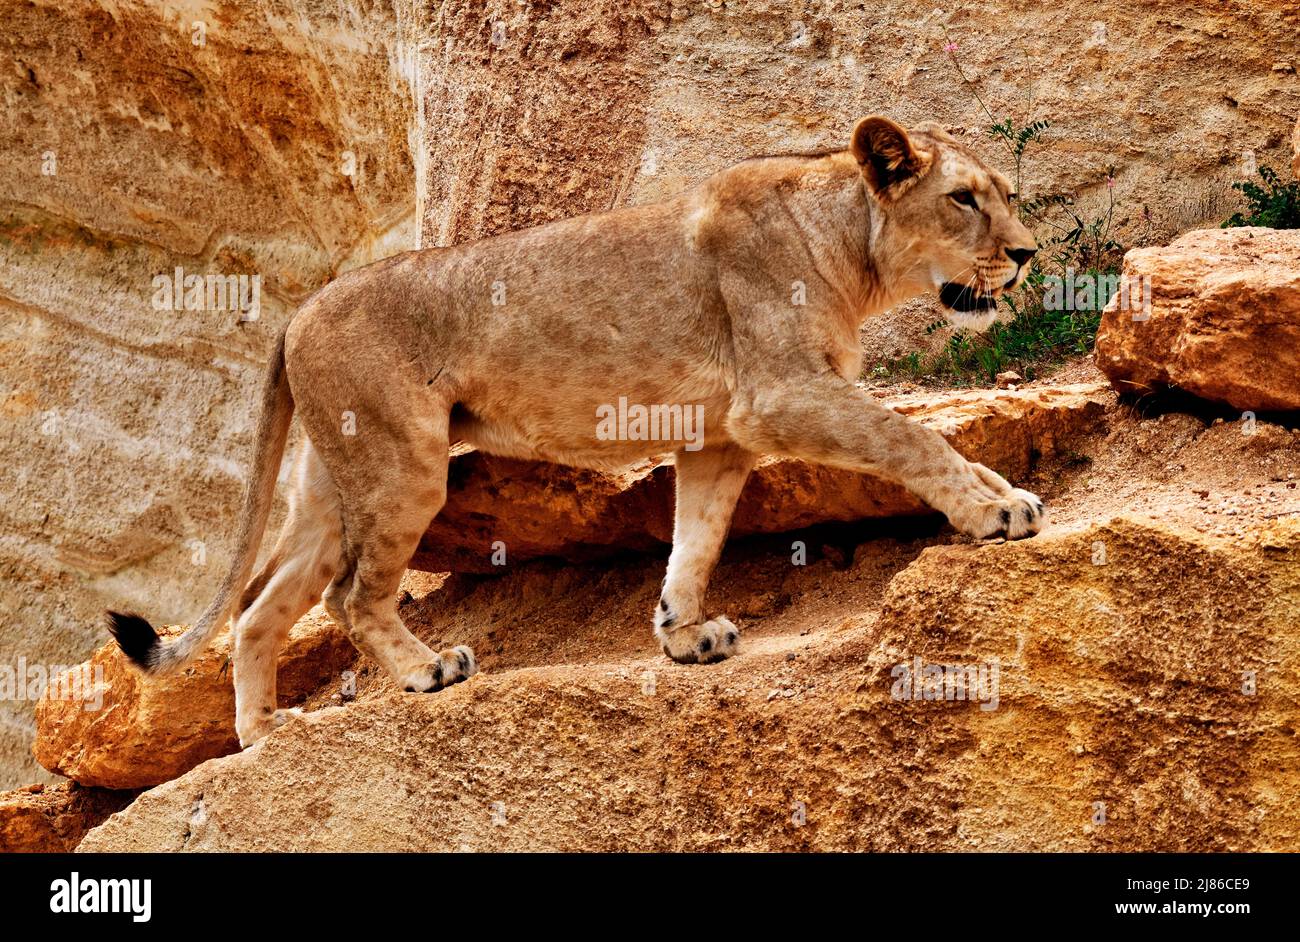 Barbary león hembra Panthera leo extinto en el cautiverio salvaje de N. Africa Foto de stock